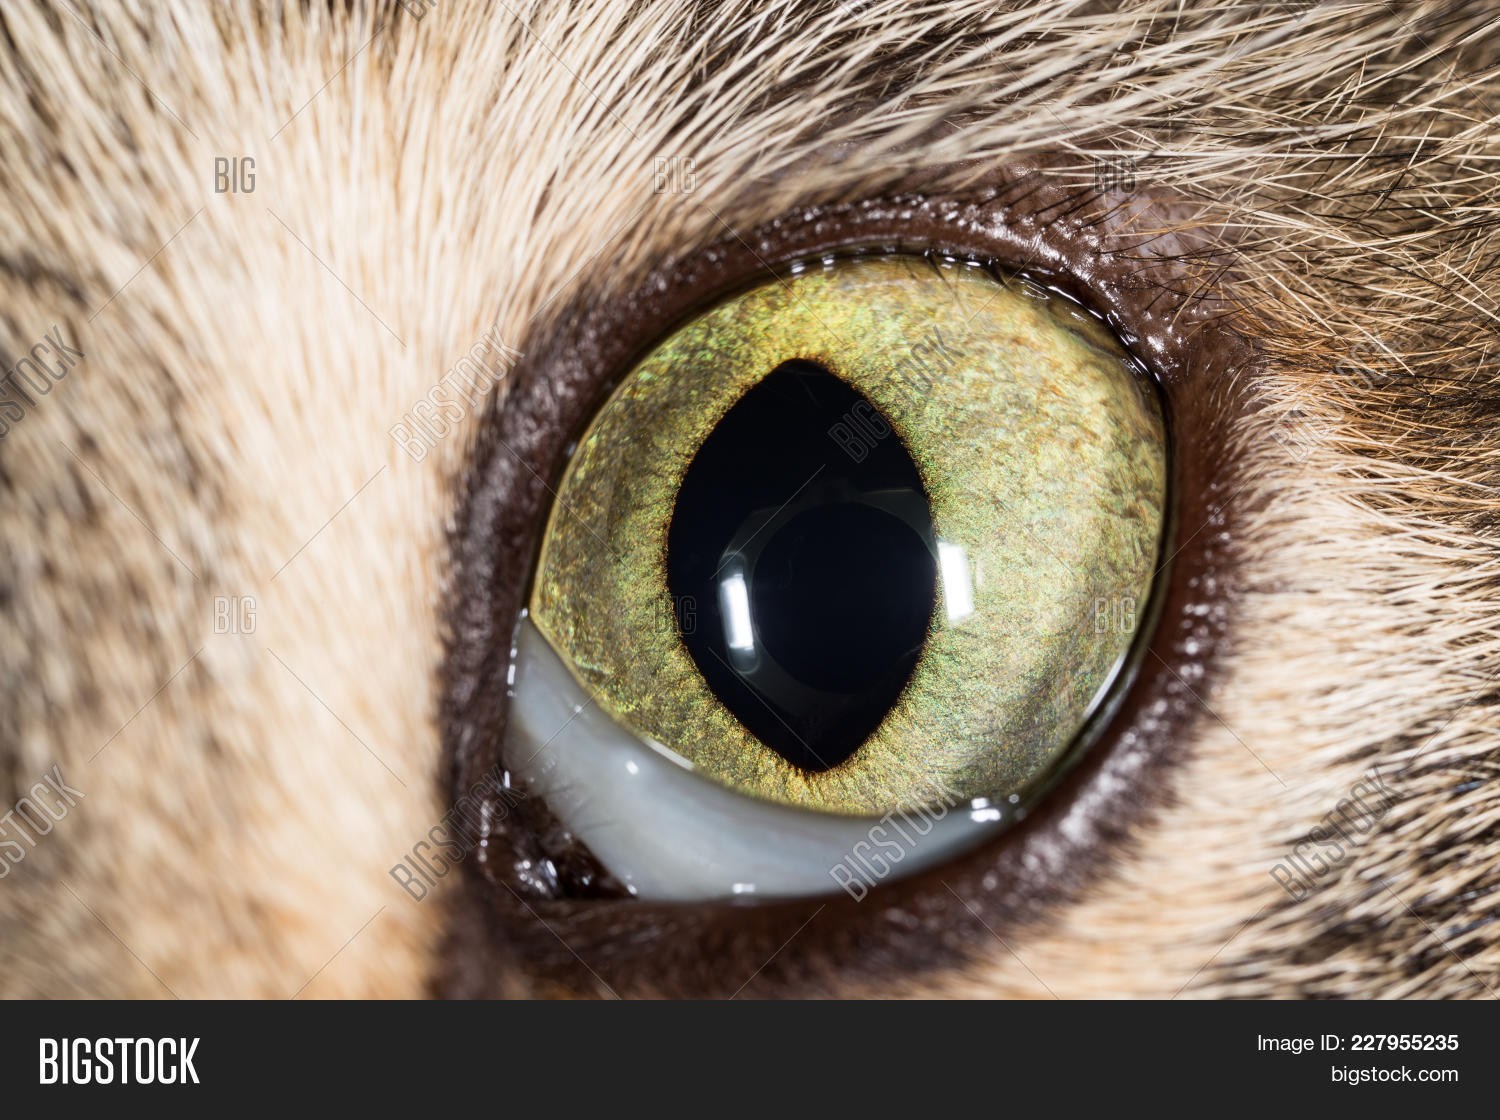 Зрачок глаза кошки